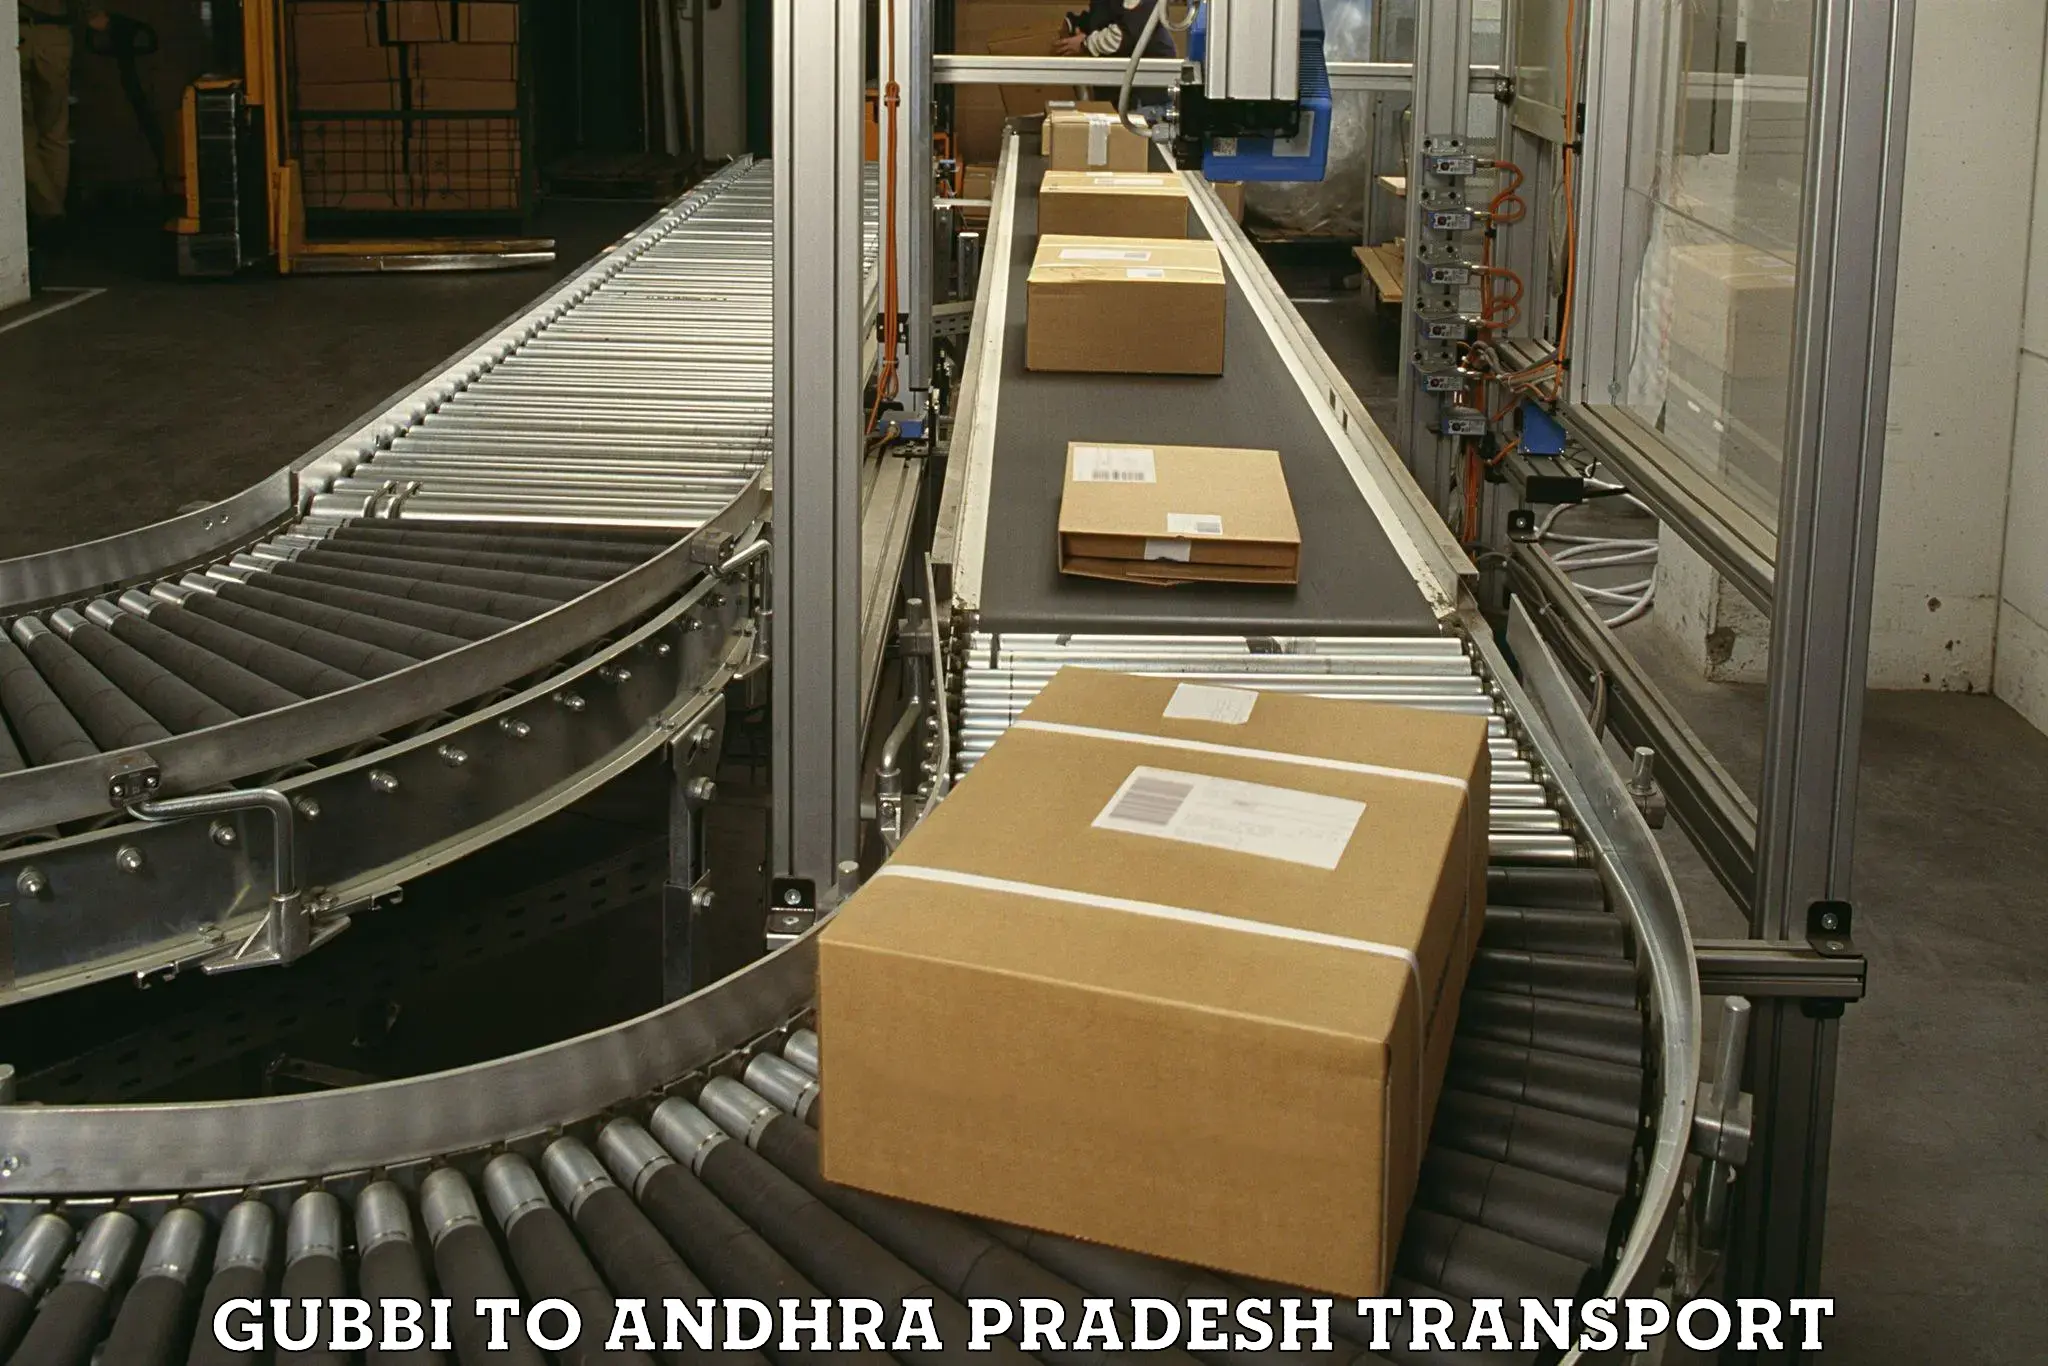 Furniture transport service Gubbi to Puttur Tirupati